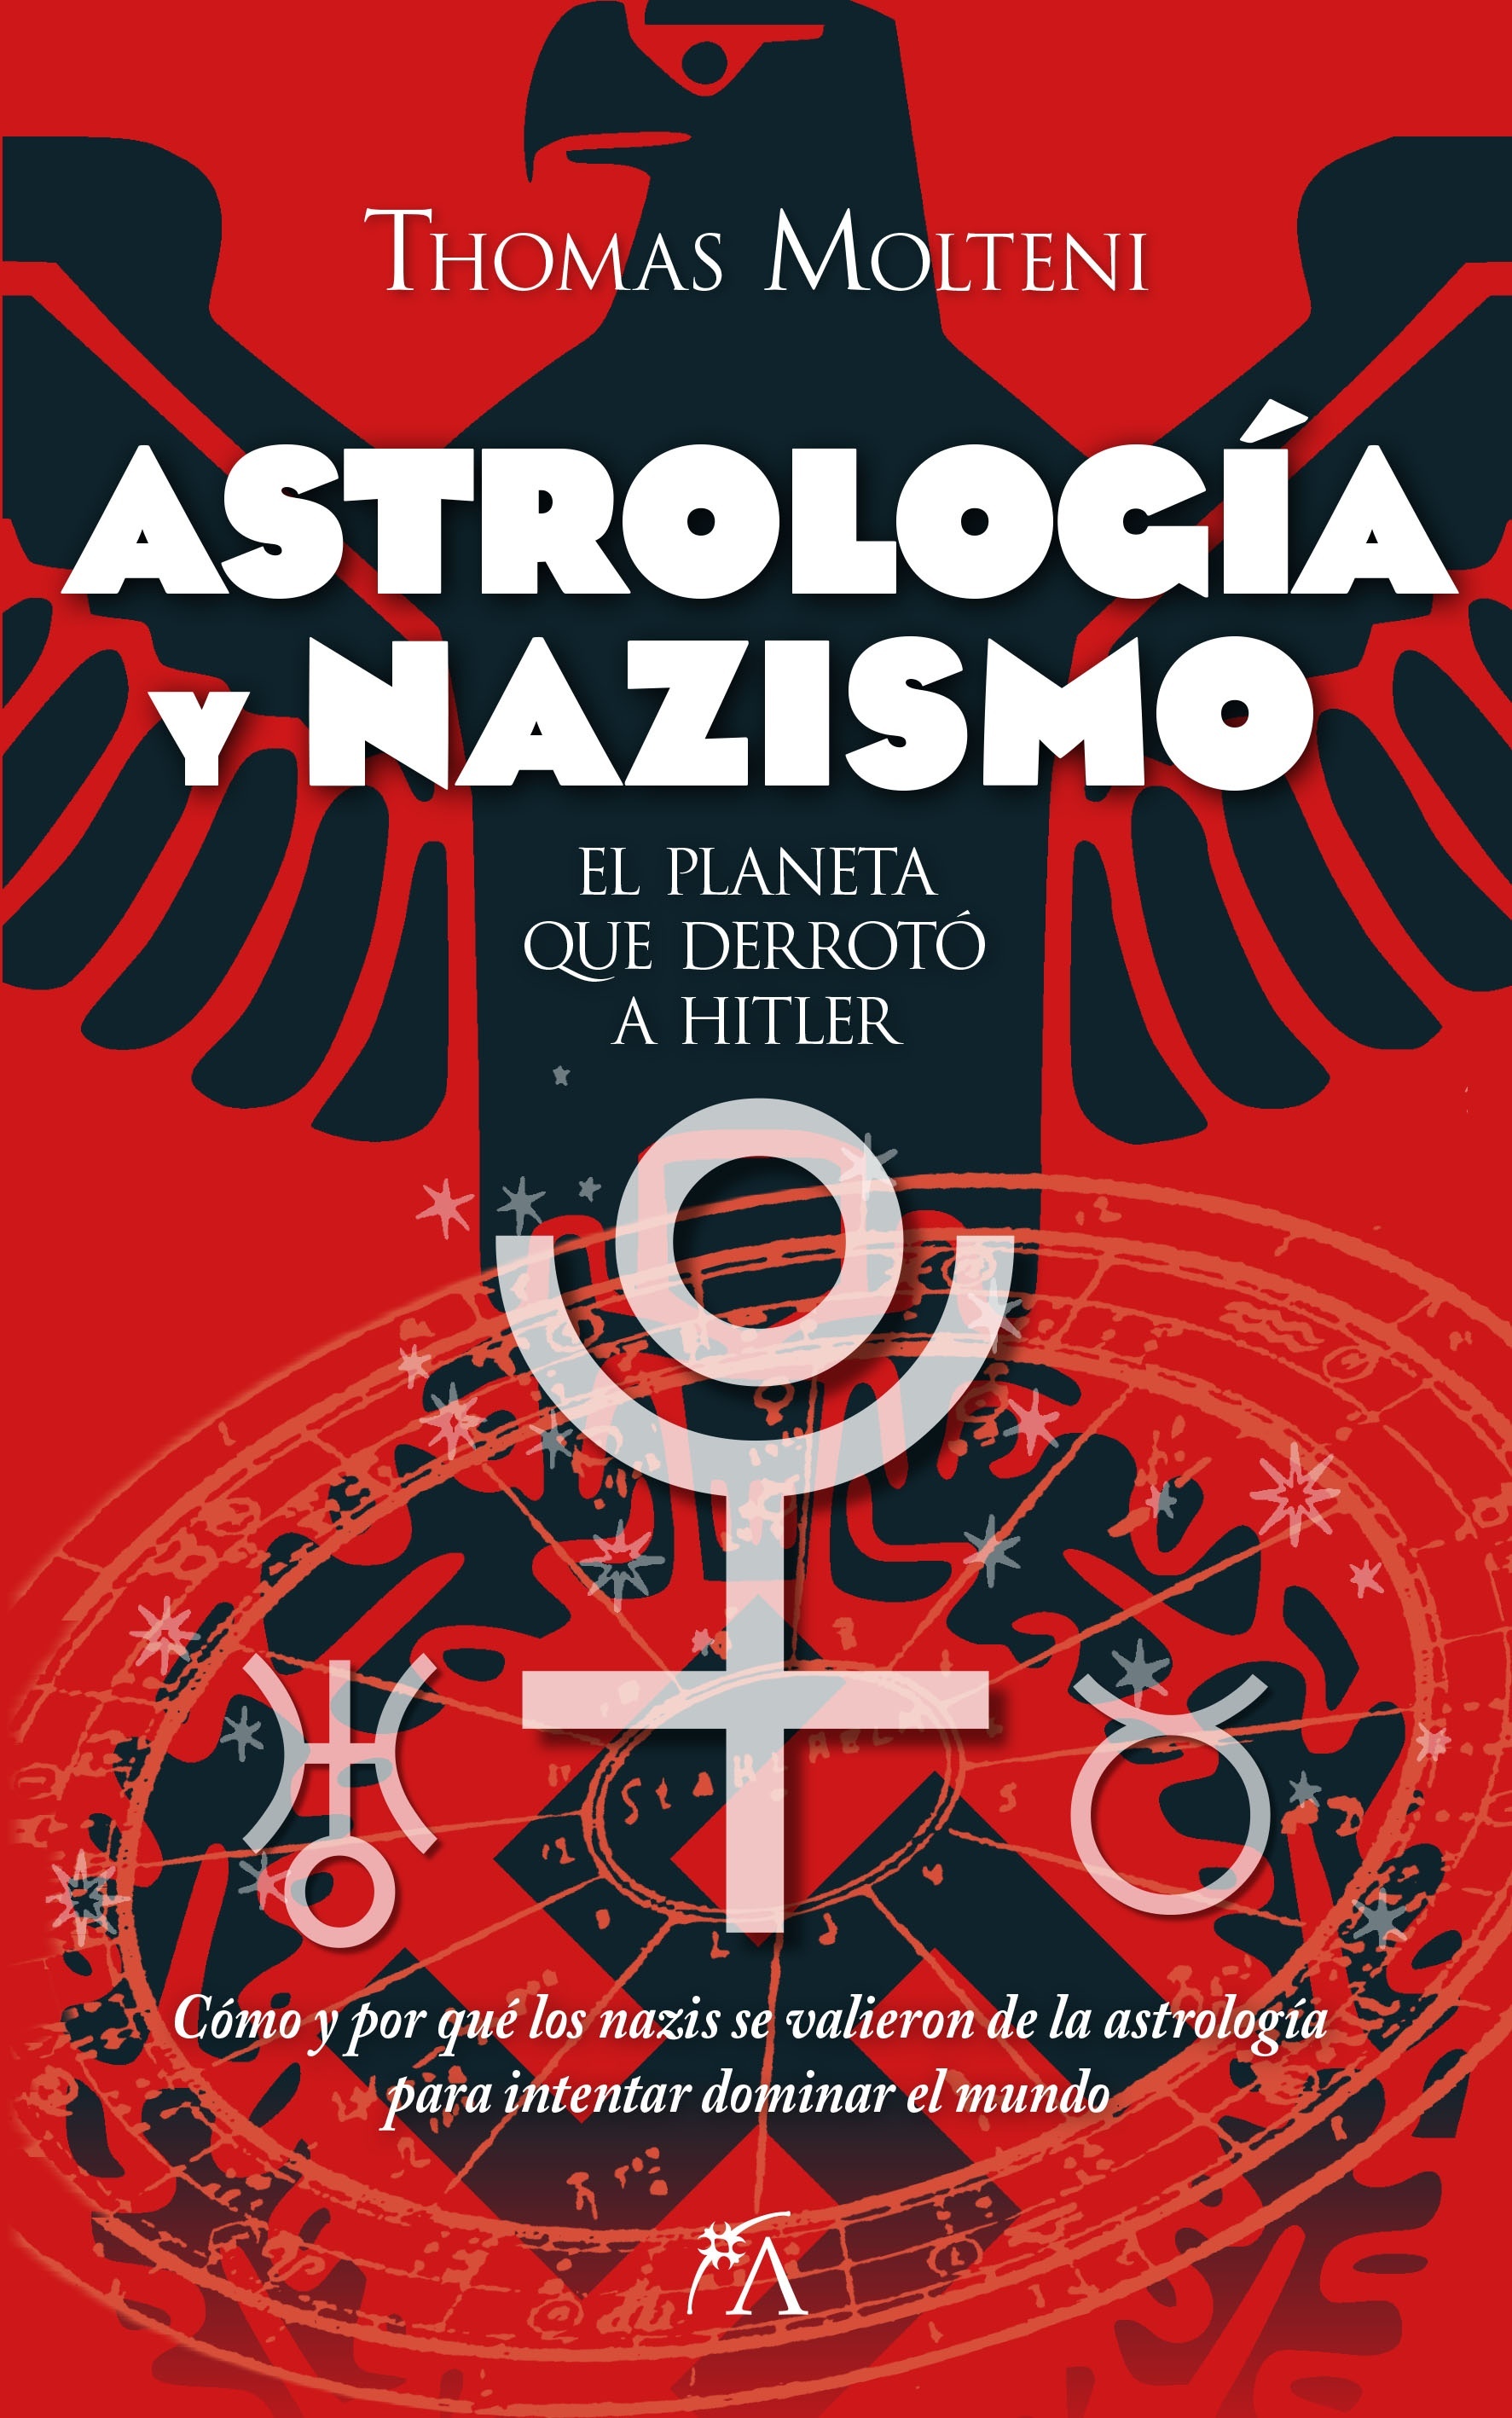 Astrología y nazismo "El planeta que derrotó a Hitler"